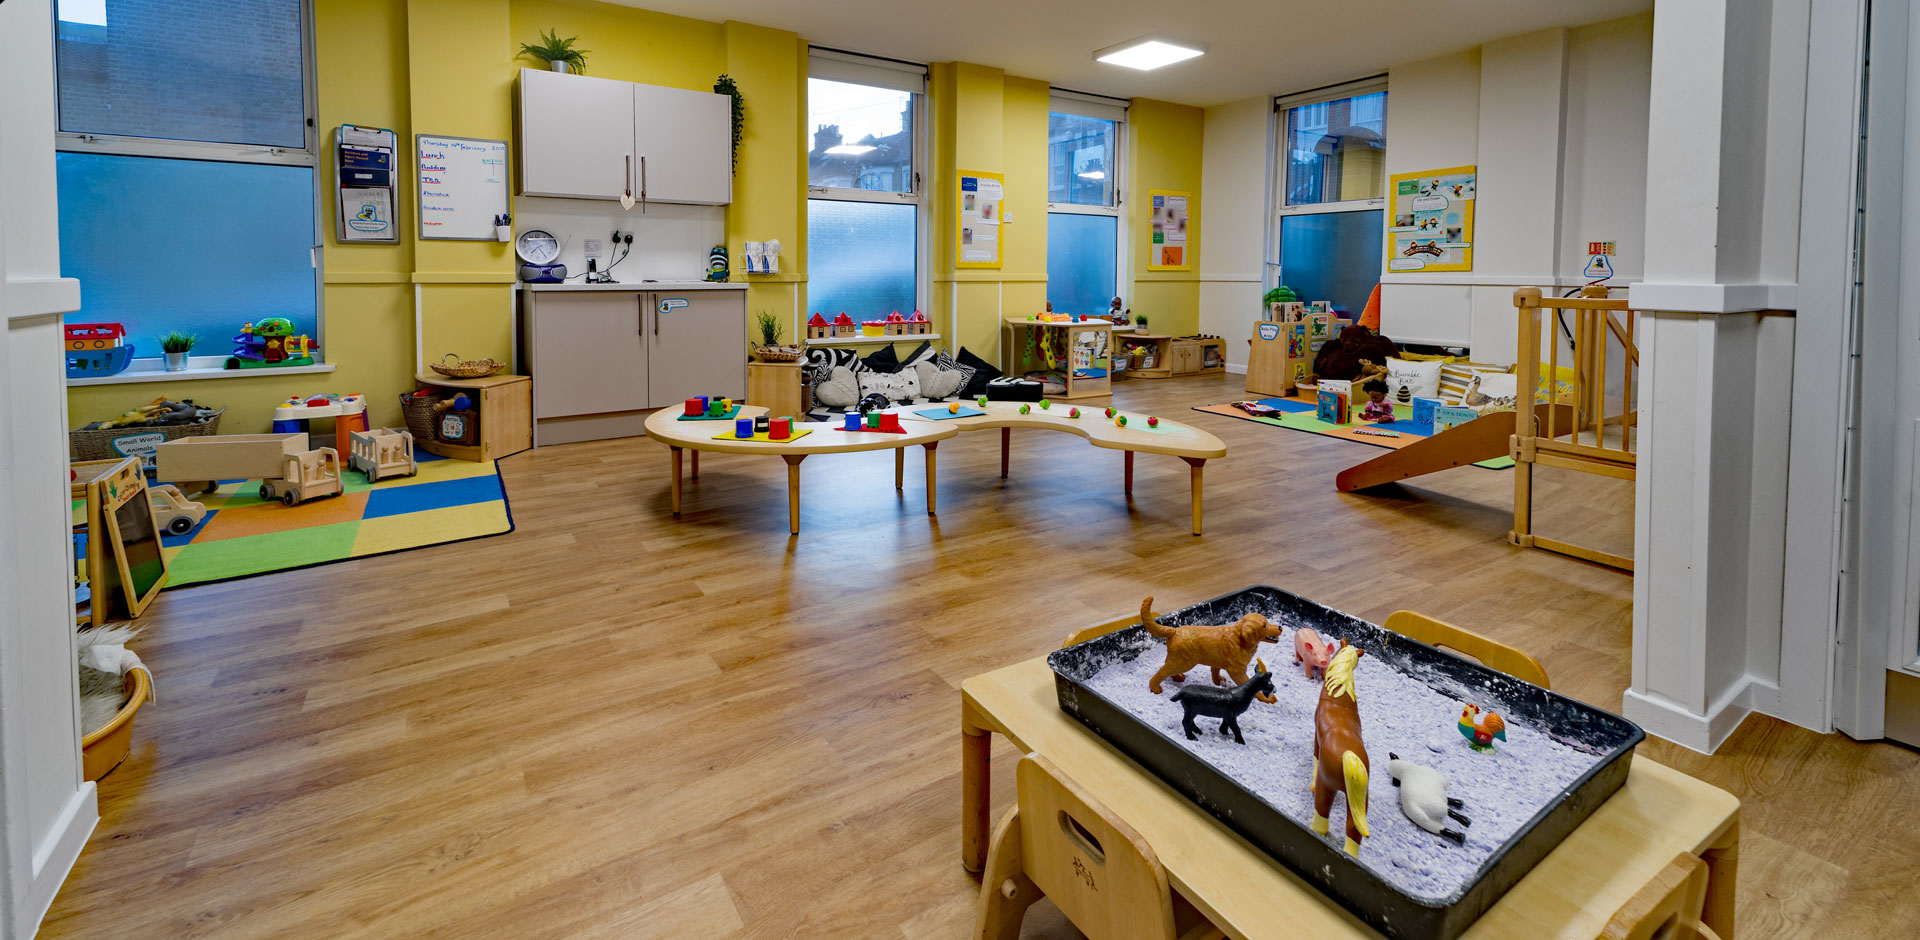 East Greenwich Day Nursery and Preschool